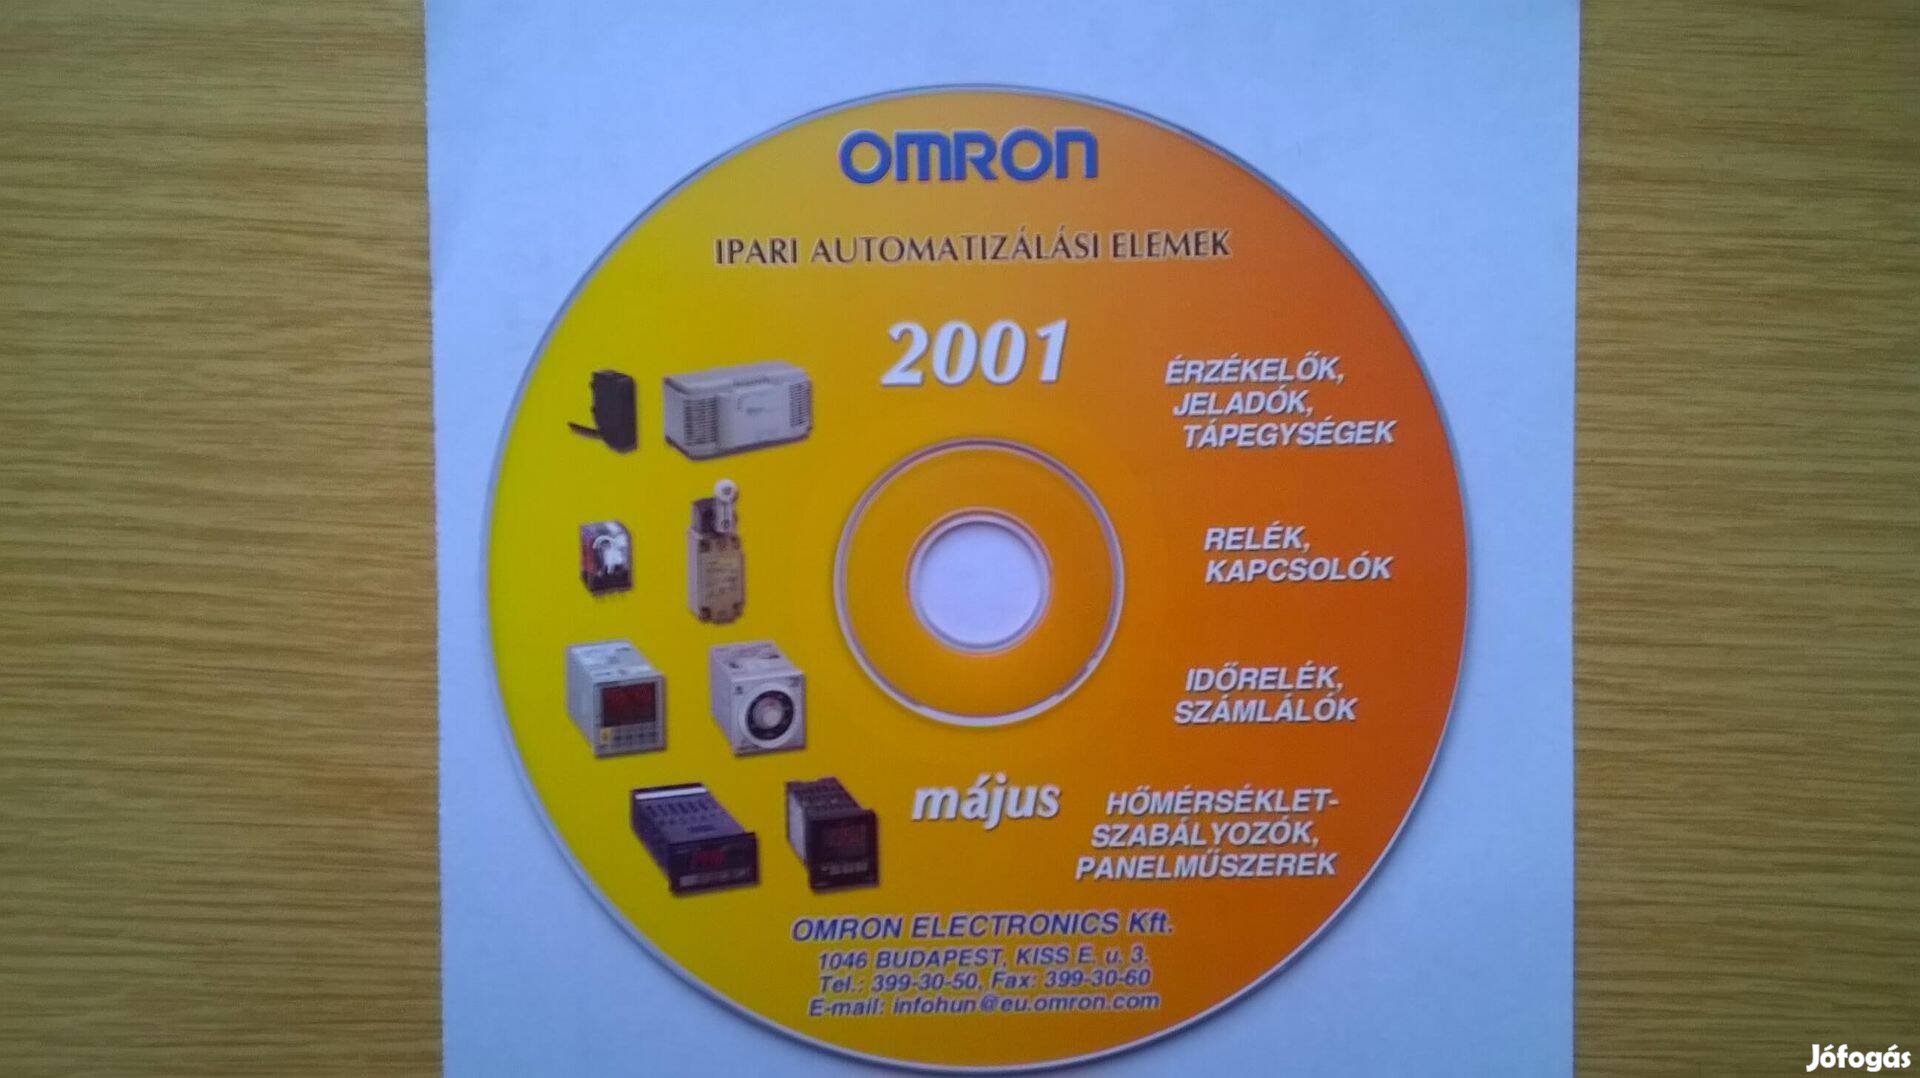 Omron ipari automatizálási elemek katalógusa CD-n , 2001